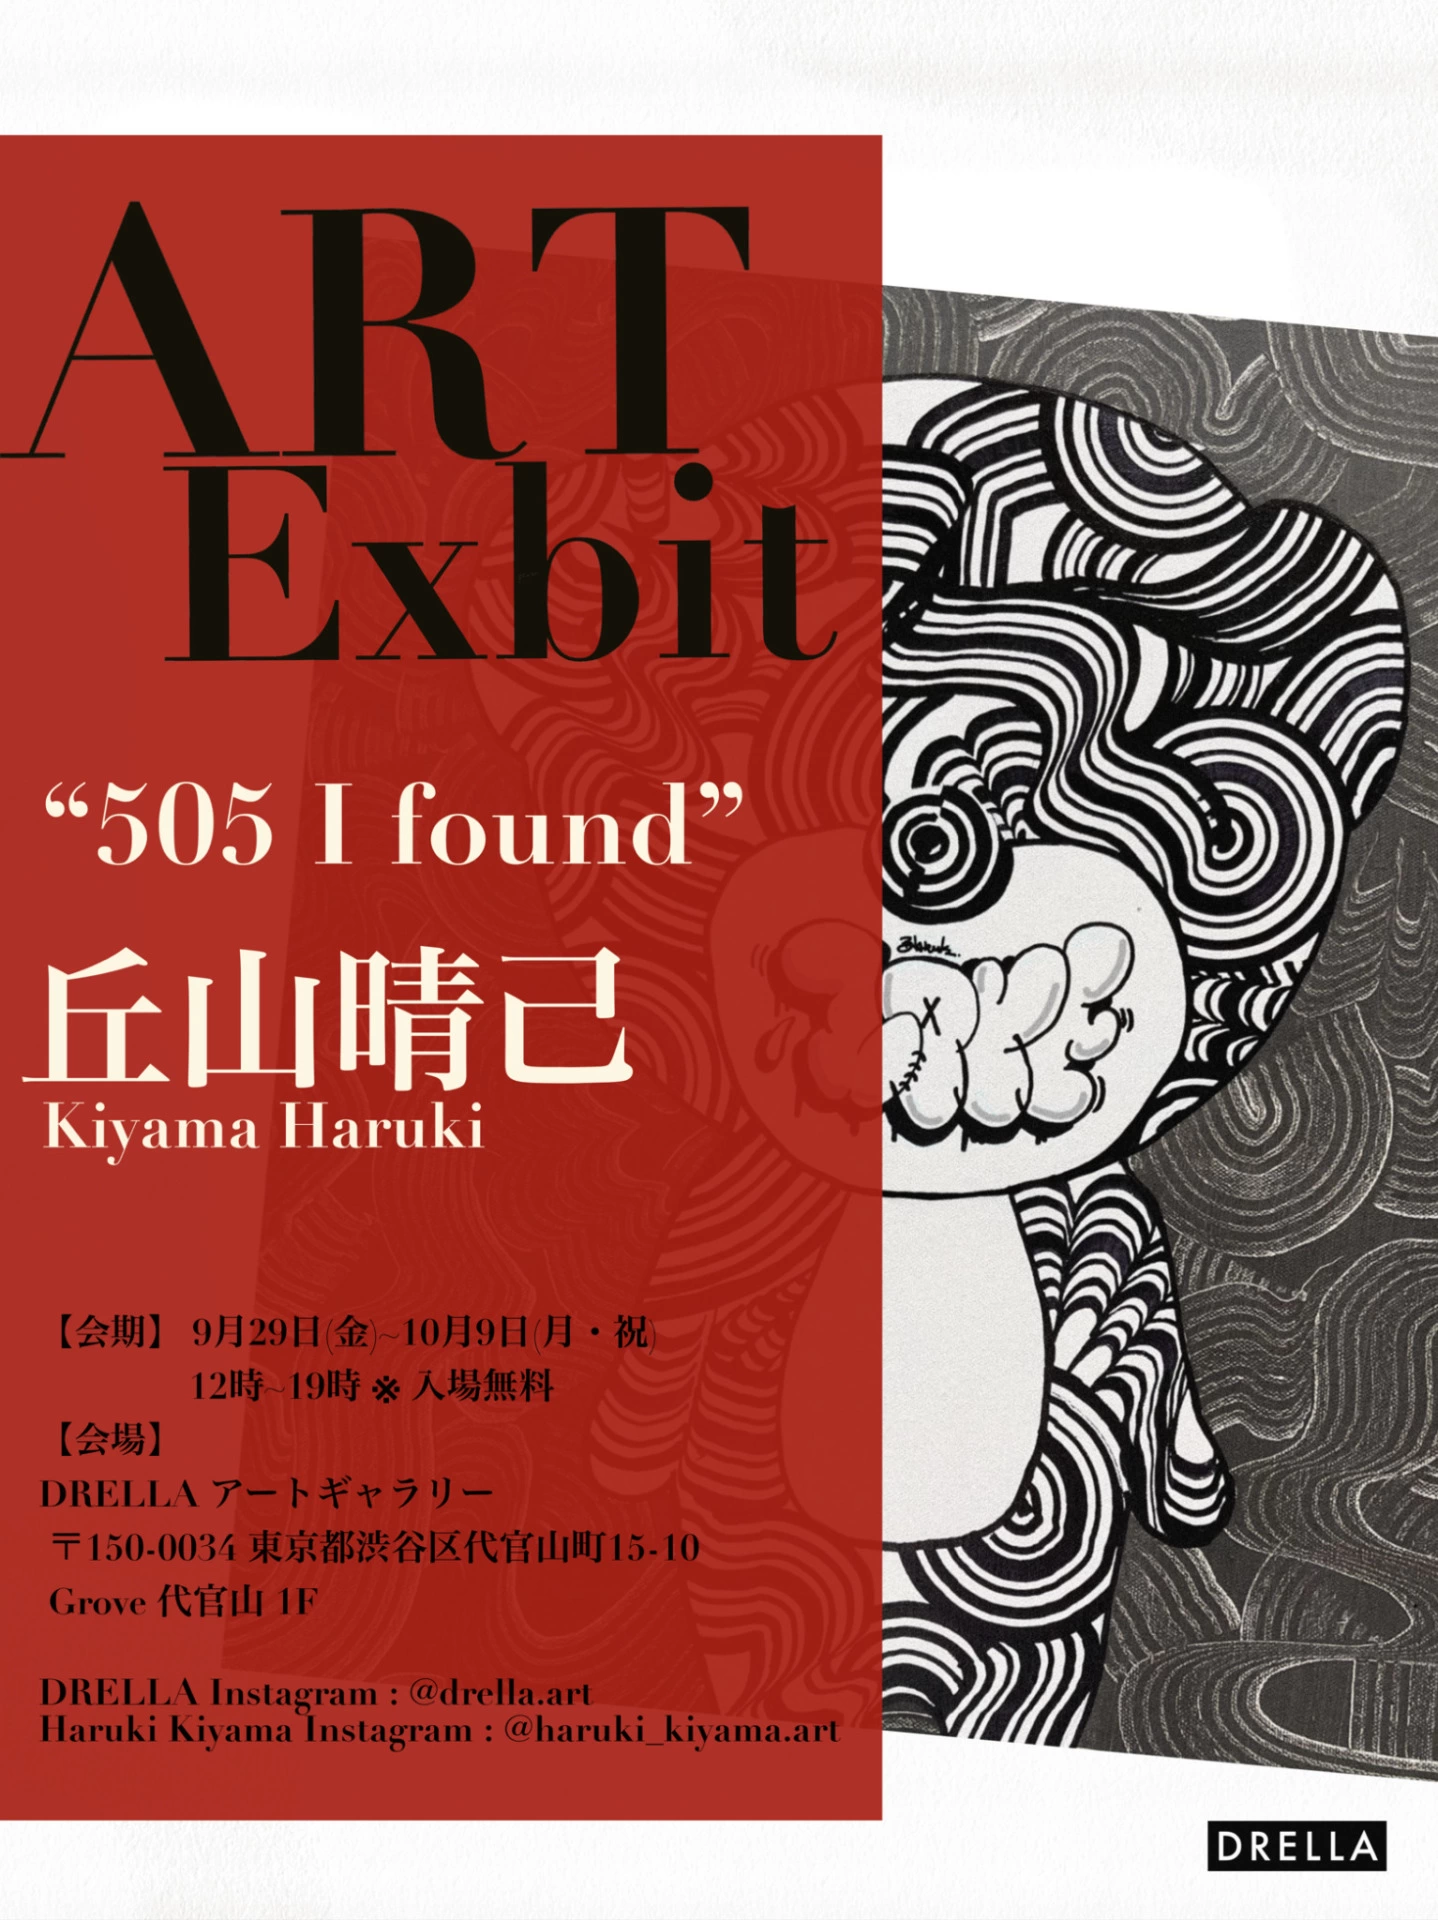 丘山晴己 HARUKI KIYAMA Solo Exhibition「505 I found」presented by DRELLA